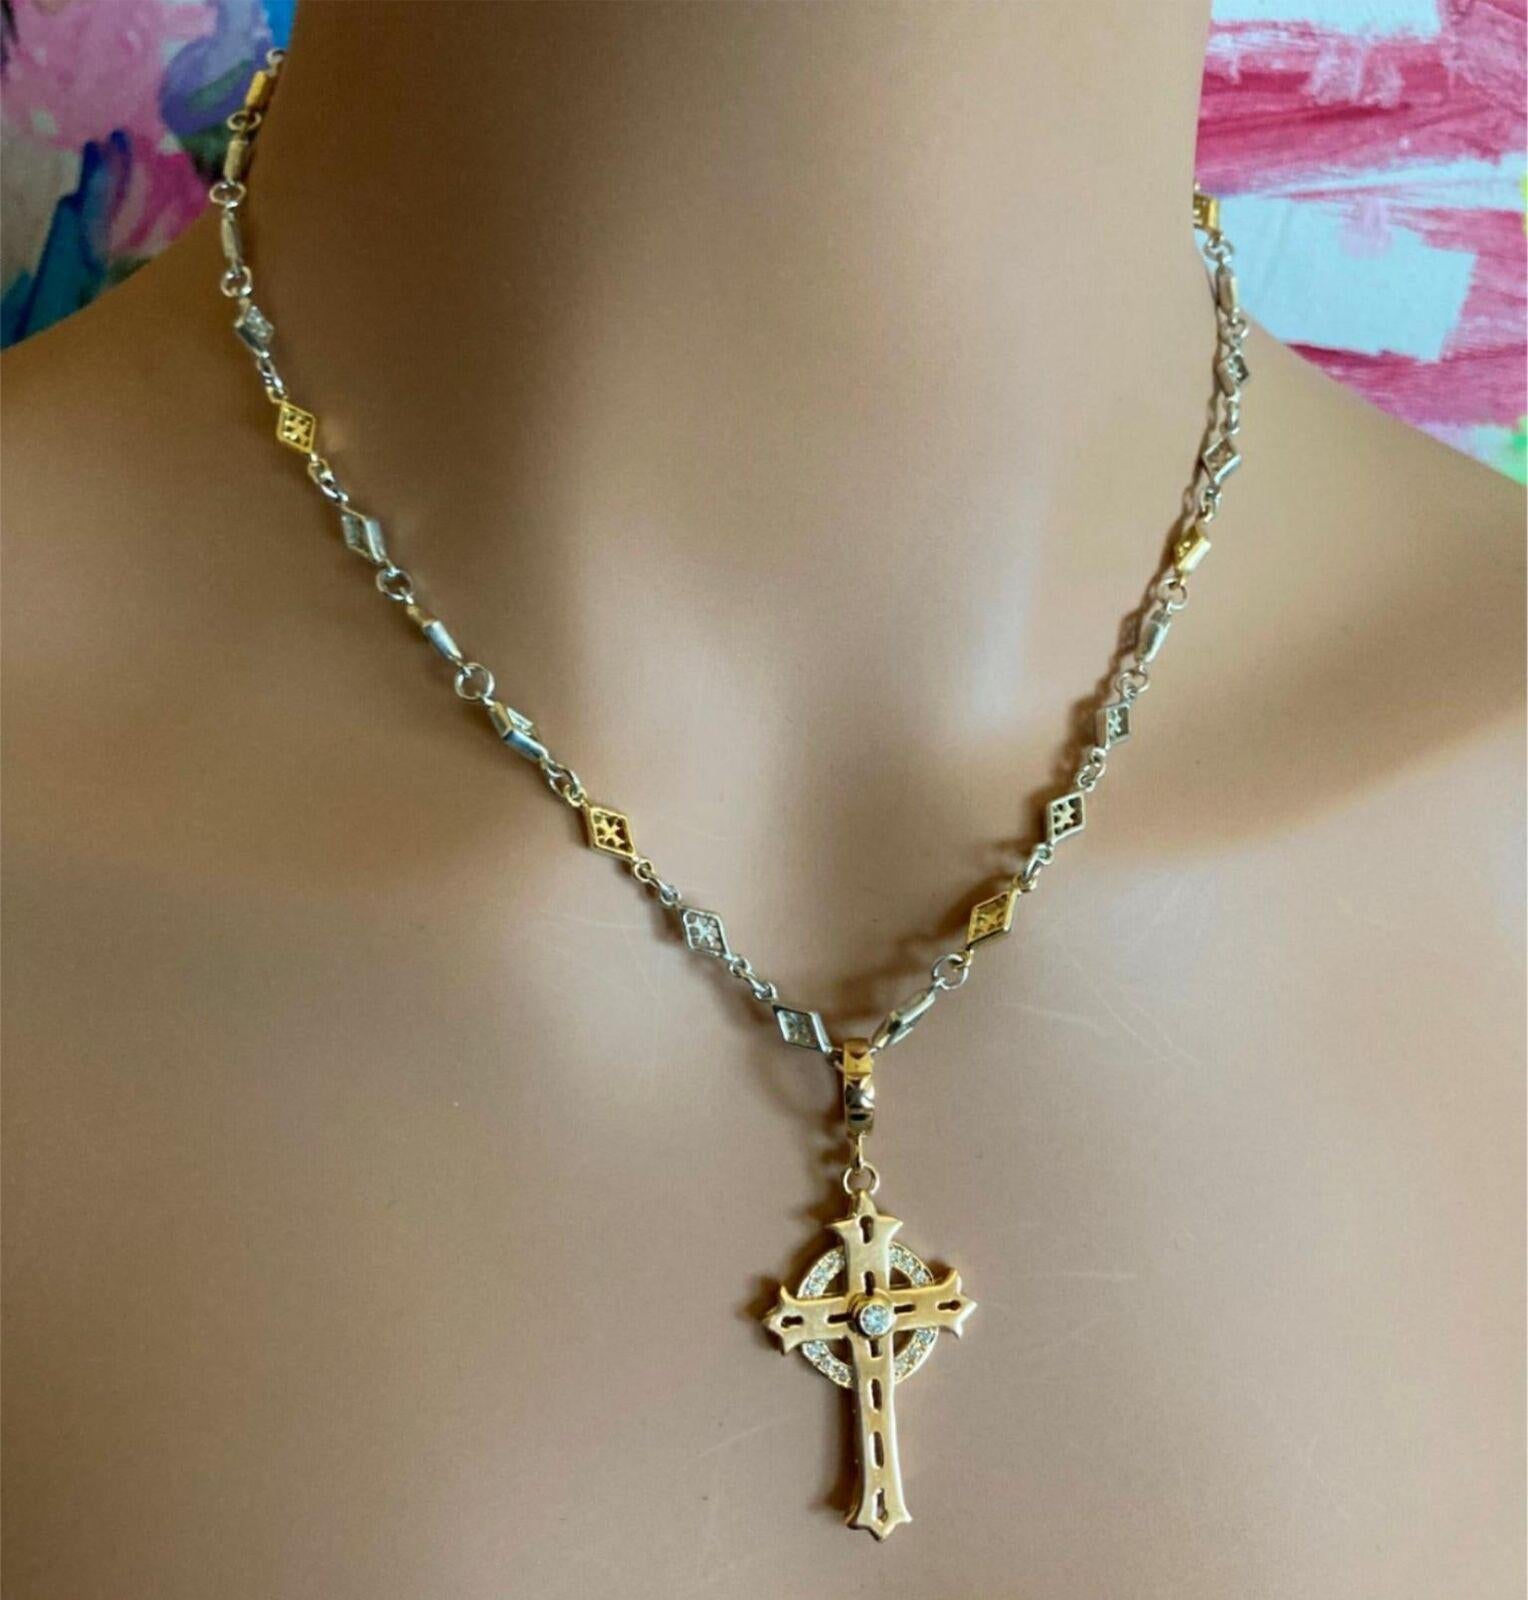 Brilliant Cut Loree Rodkin Cross Diamond Yellow Gold Silver Chain Pendant Necklace For Sale